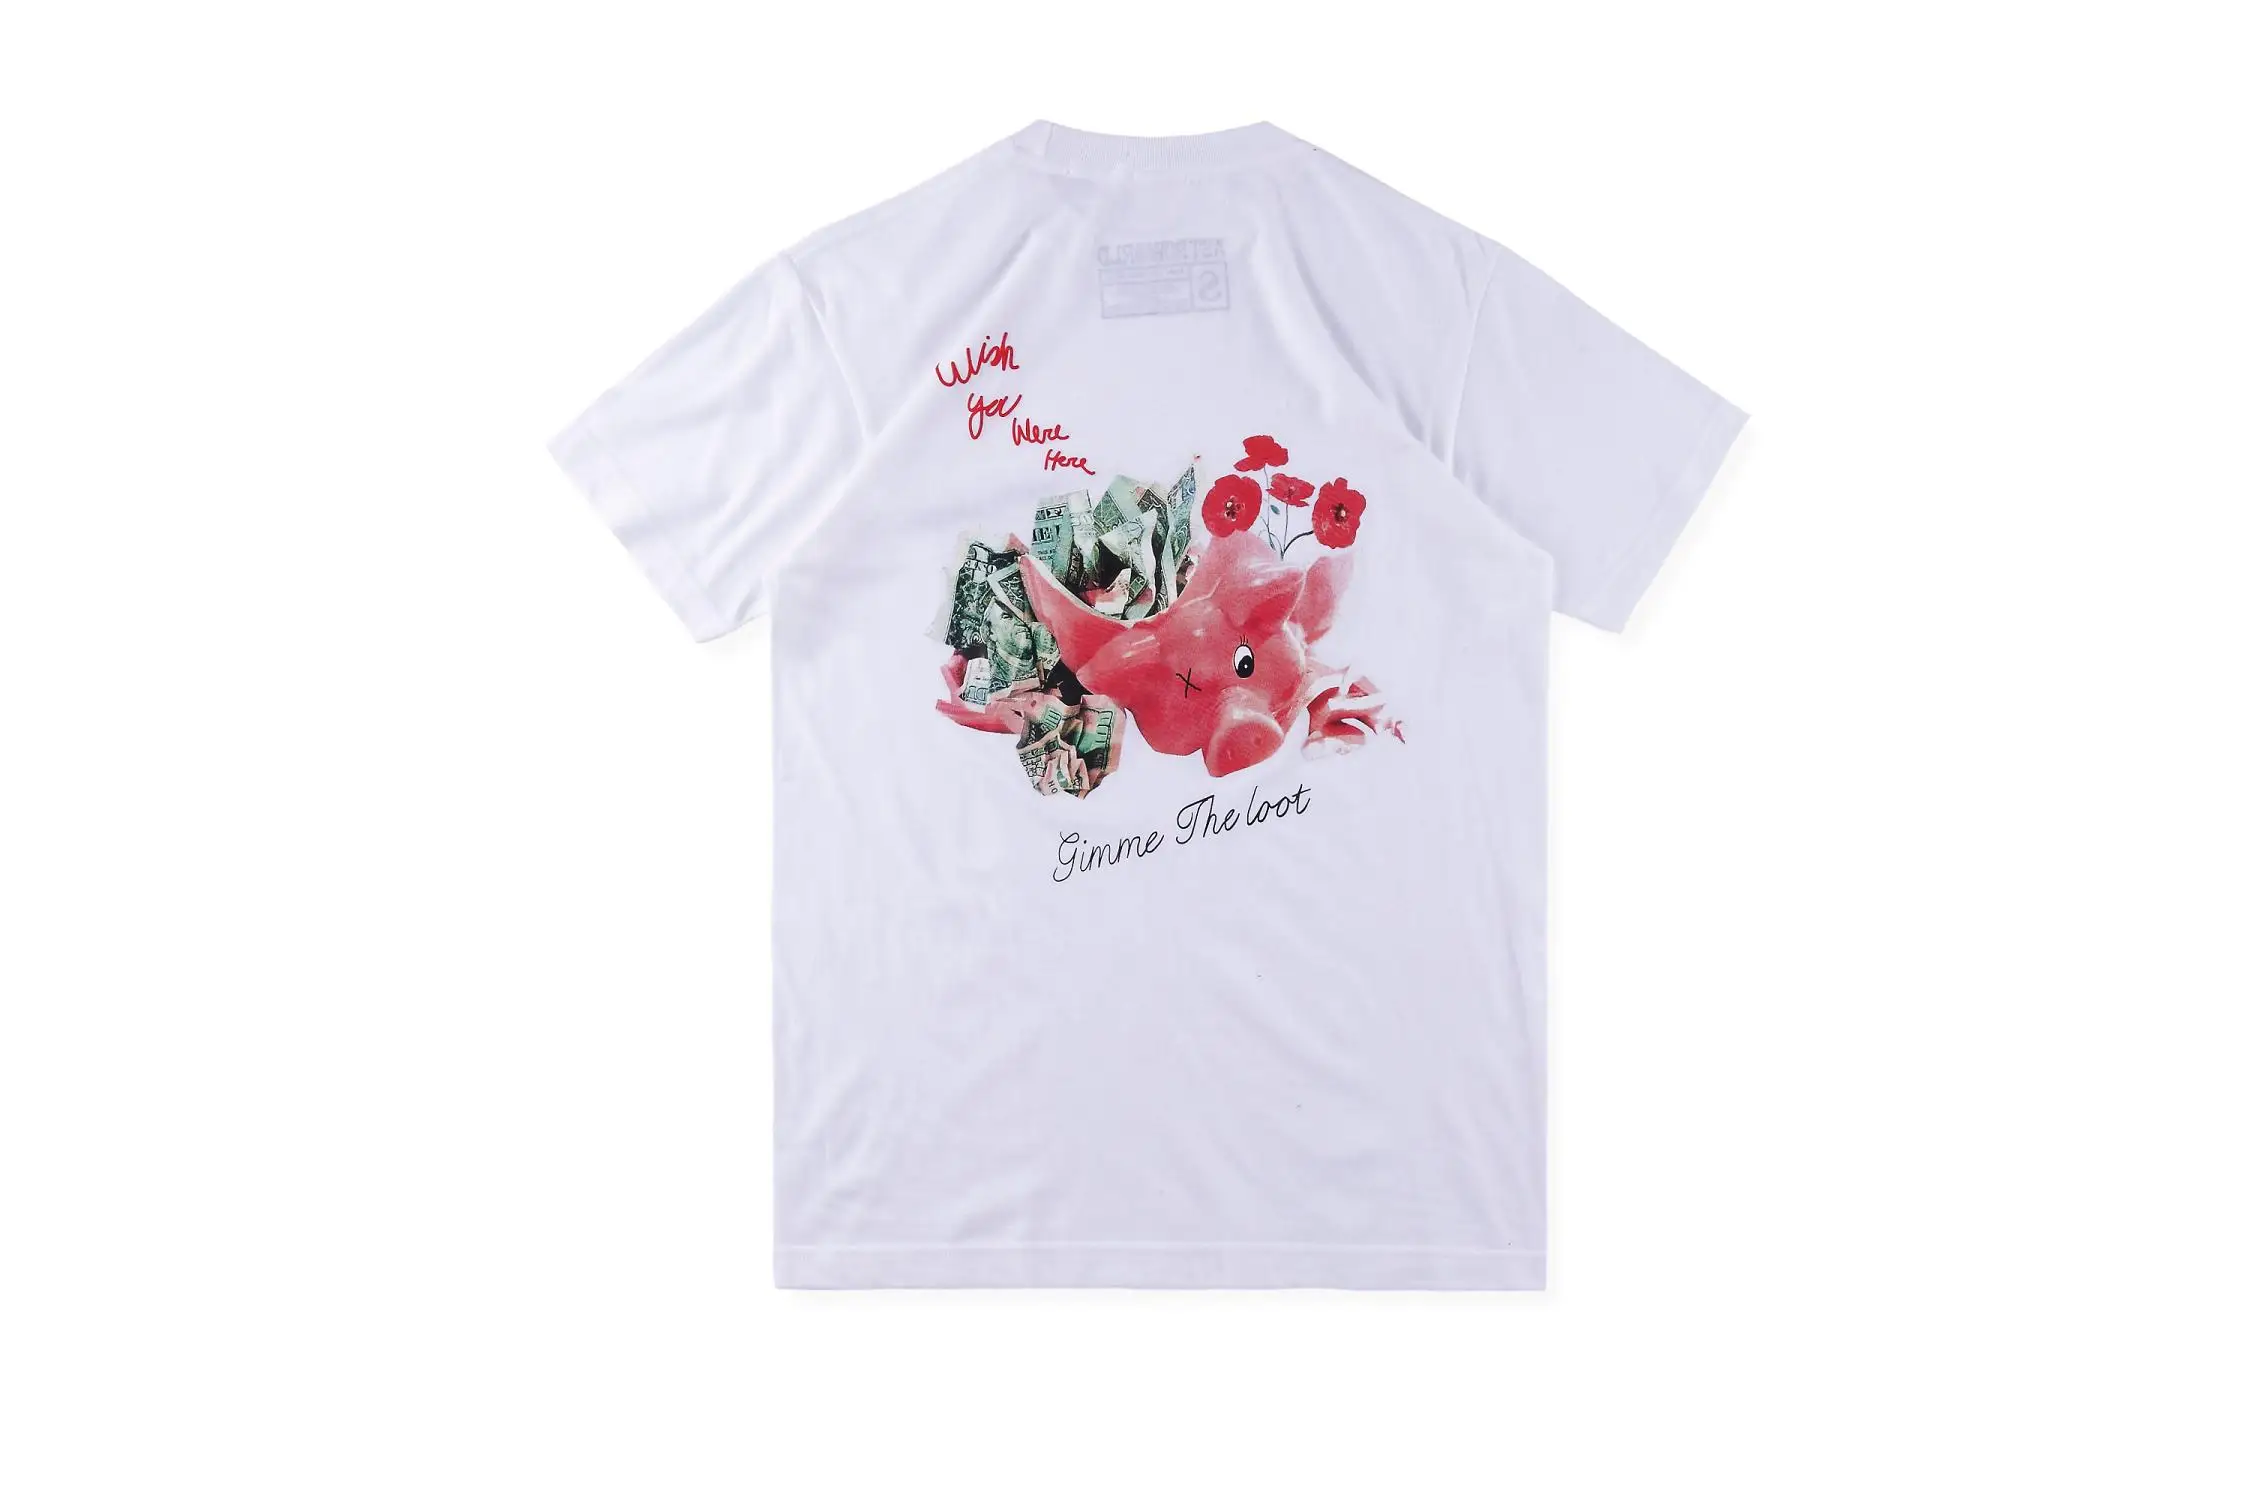 Высокое качество ASTROWORLD футболка для мужчин и женщин Astroworld футболки хип хоп Уличная Джастин Бибер ASTROWORLD трэвисс Скотт футболка - Цвет: white6